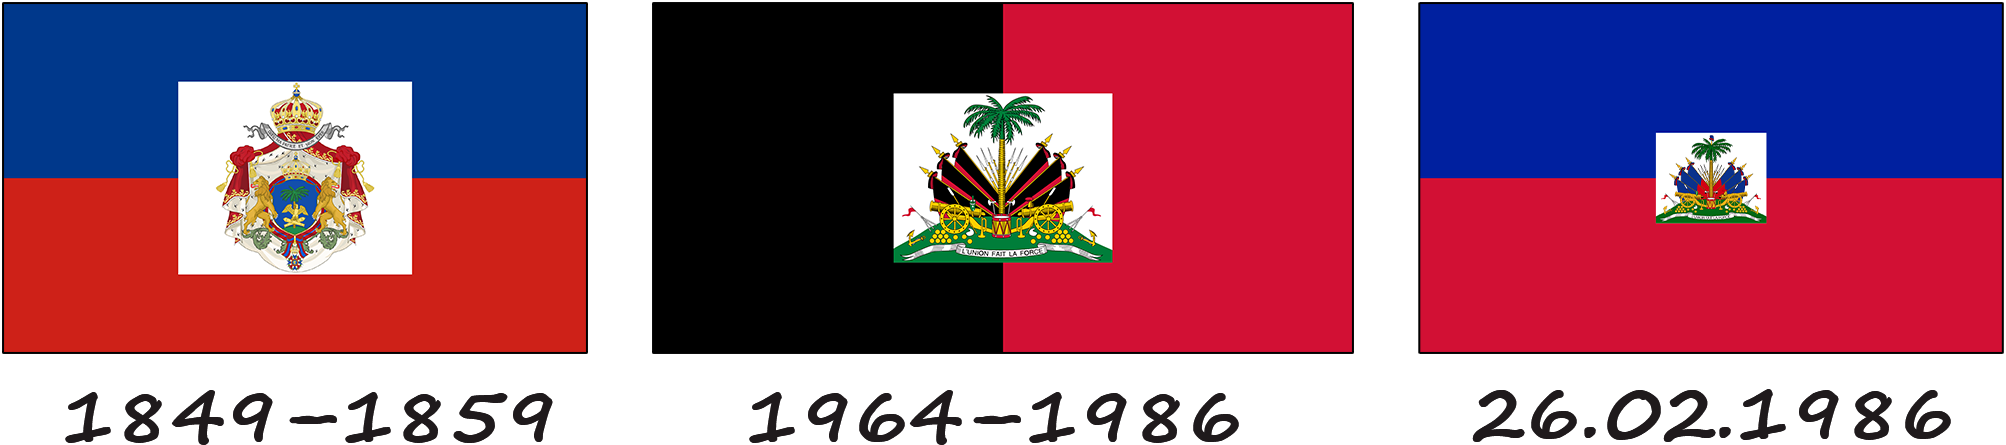 Історія прапору Гаїті